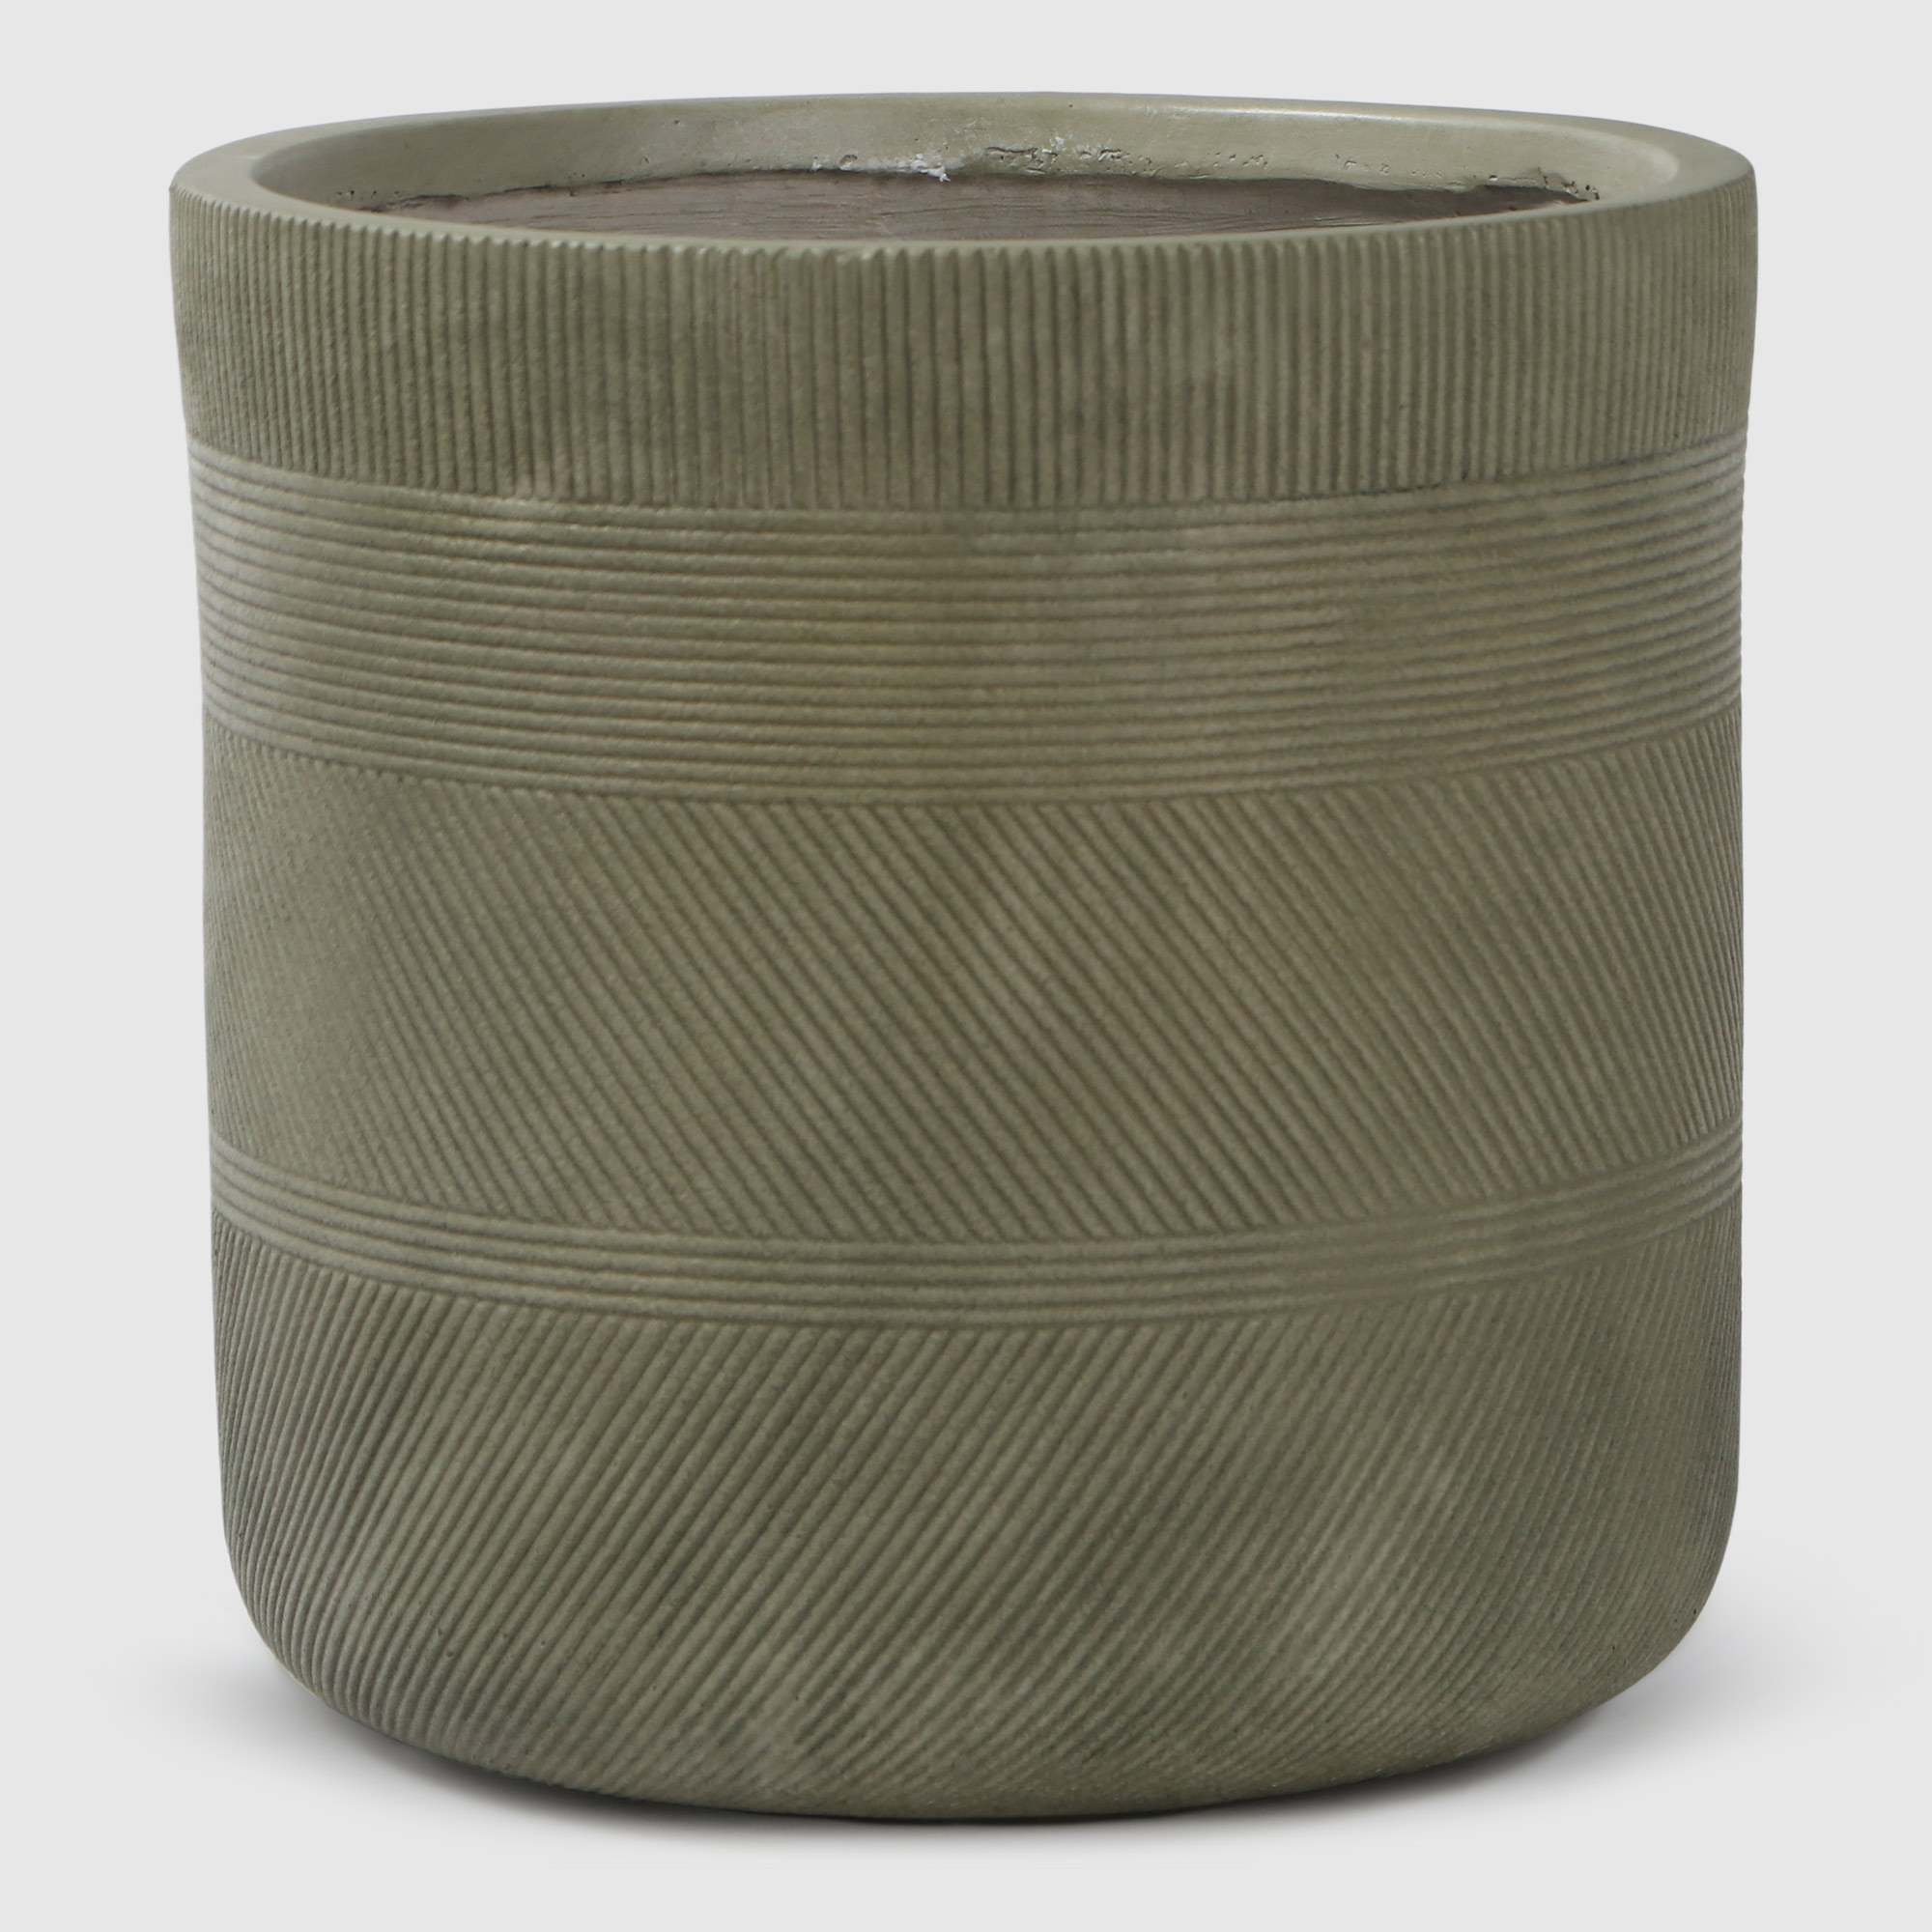 Горшок для цветов L&T Pottery цилиндр антик светло-зеленый D30 флисовый плед hyseas 200х220 см светло зеленый